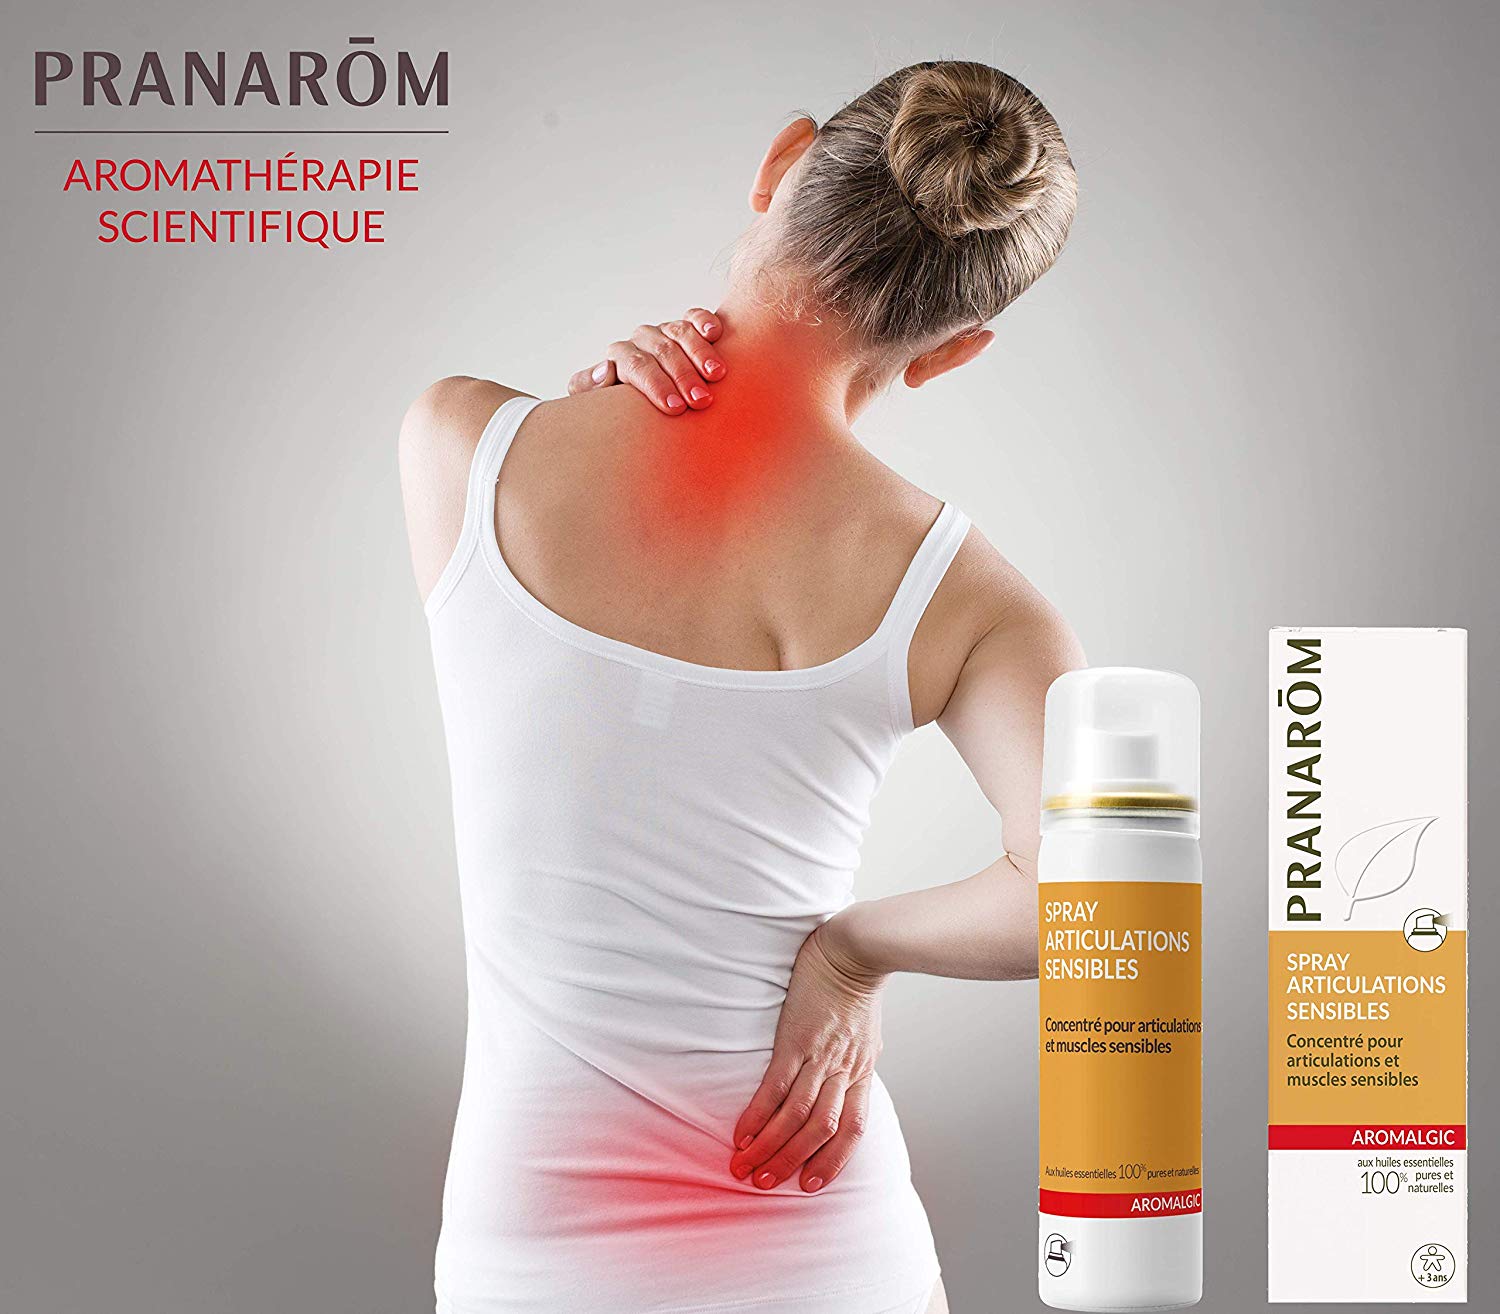 Spray Pranarom articulaciones sensibles para articulaciones y músculos sensibles AROMALGIC SPRAY es una solución de aceites esenciales que debe vaporizarse